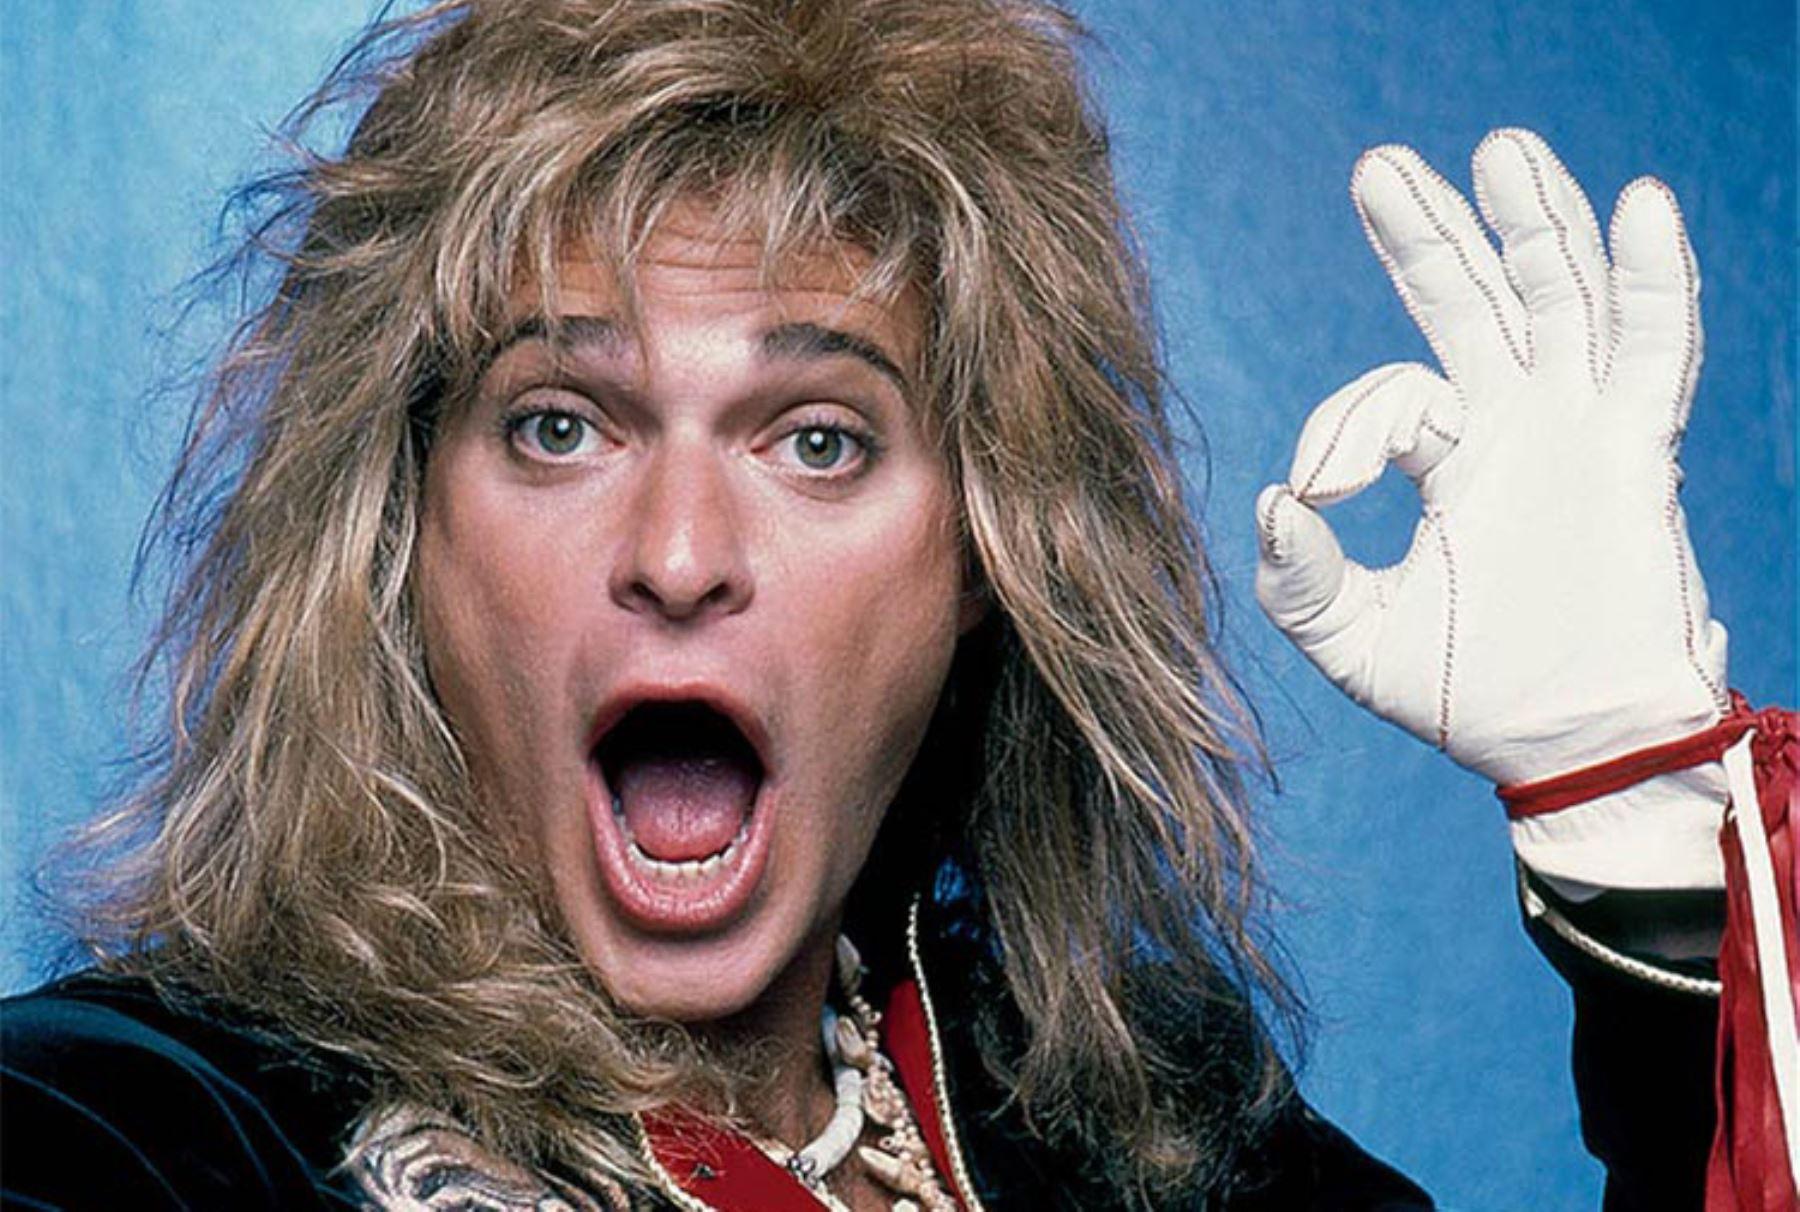 El que fuera cantante de los Van Halen es reconocido por ser uno de los mejores vocalistas que ha dado el rock